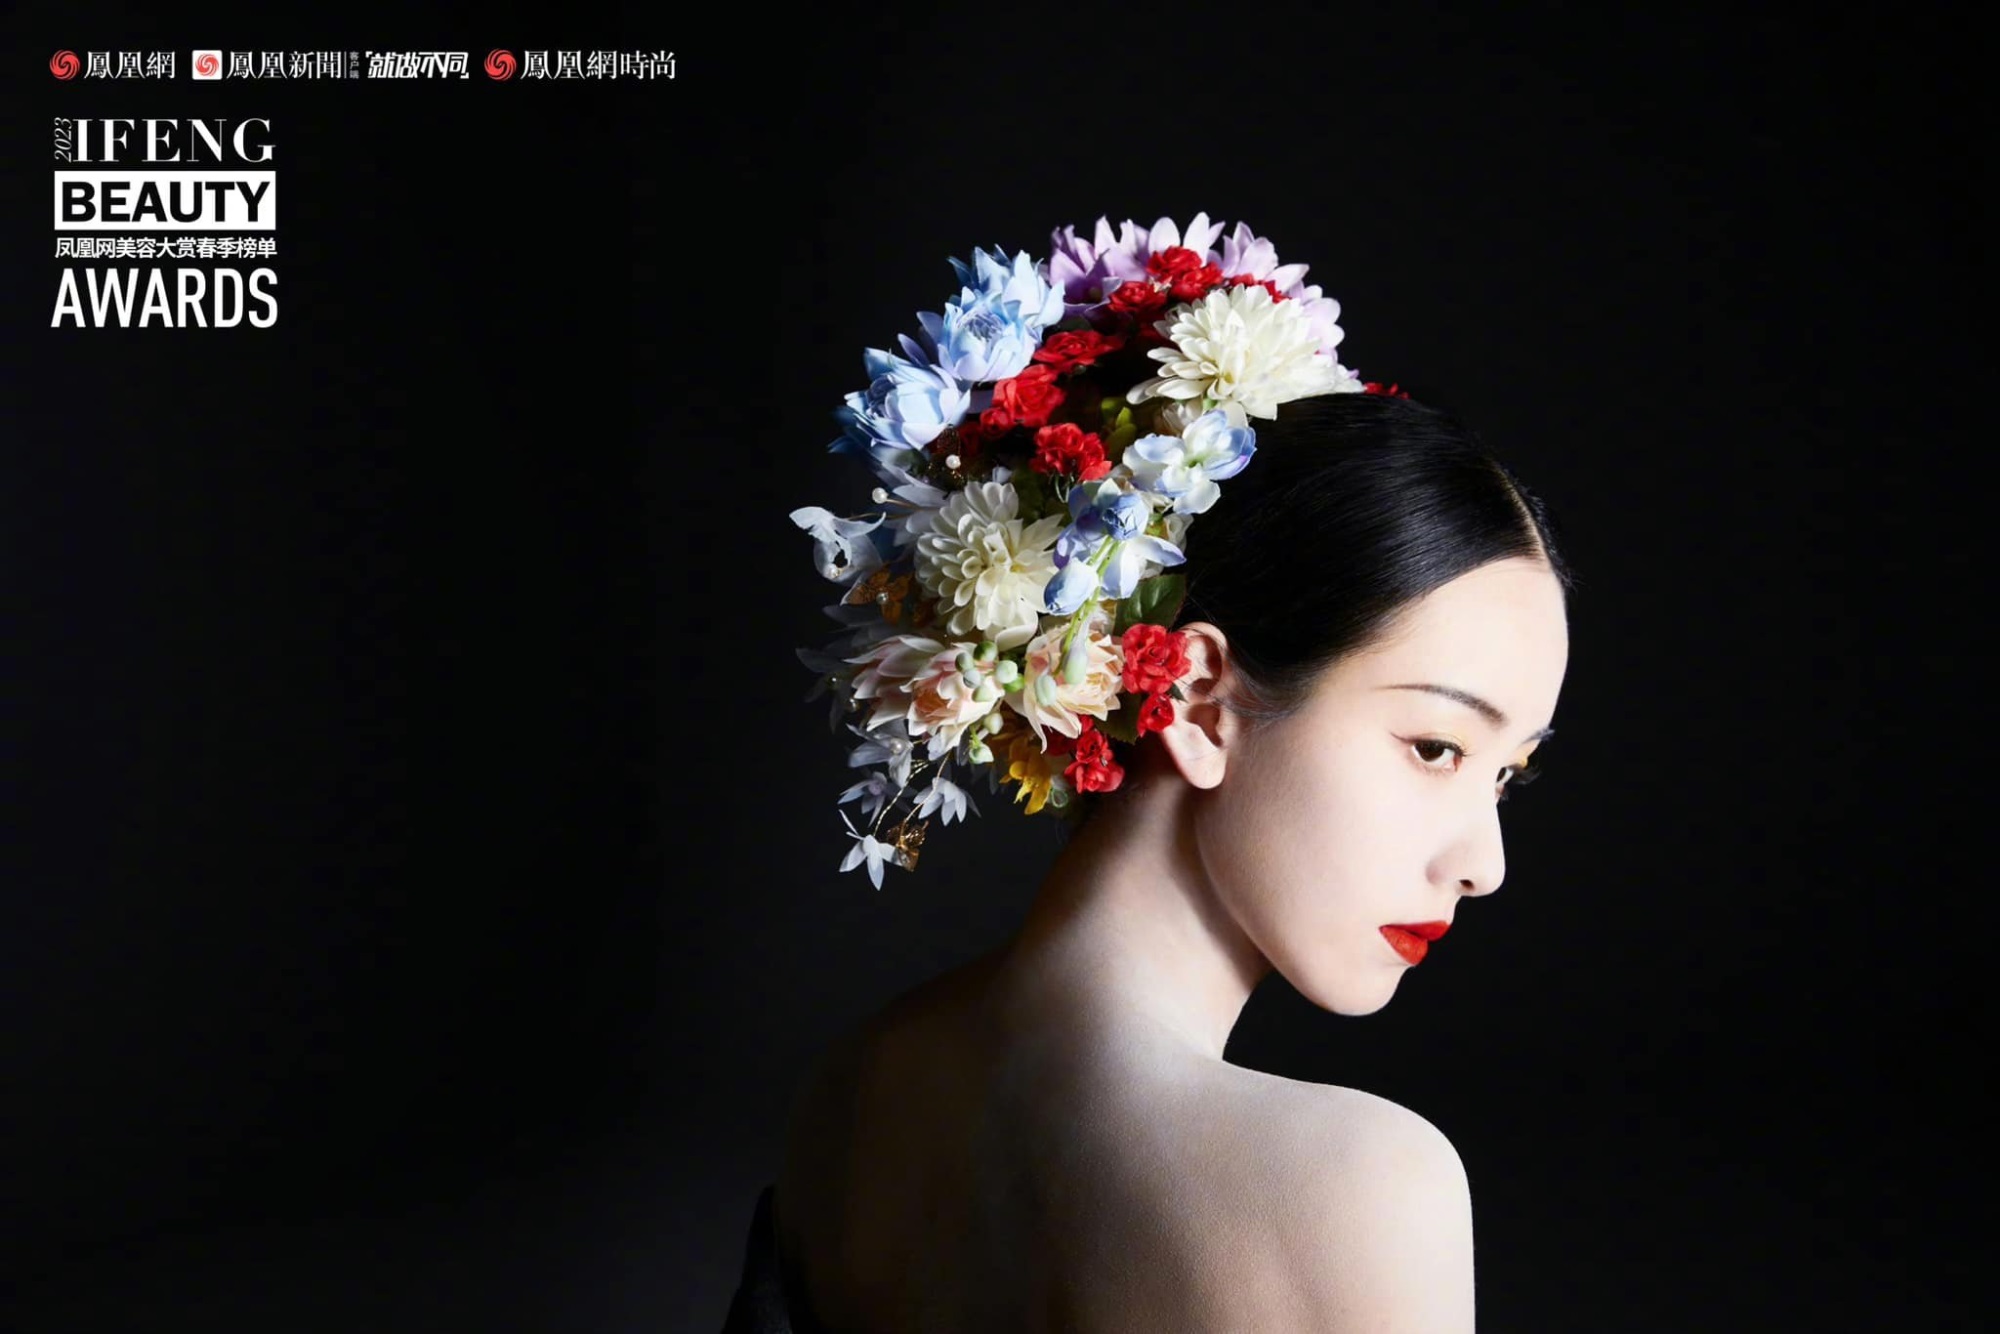 Trần Đô Linh trở thành đại sứ mùa xuân của tạp chí Ifeng Beauty Awards, xinh đẹp 'động lòng người' nhưng không bằng 'đàn chị' Triệu Lệ Dĩnh ở một điểm - Ảnh 8